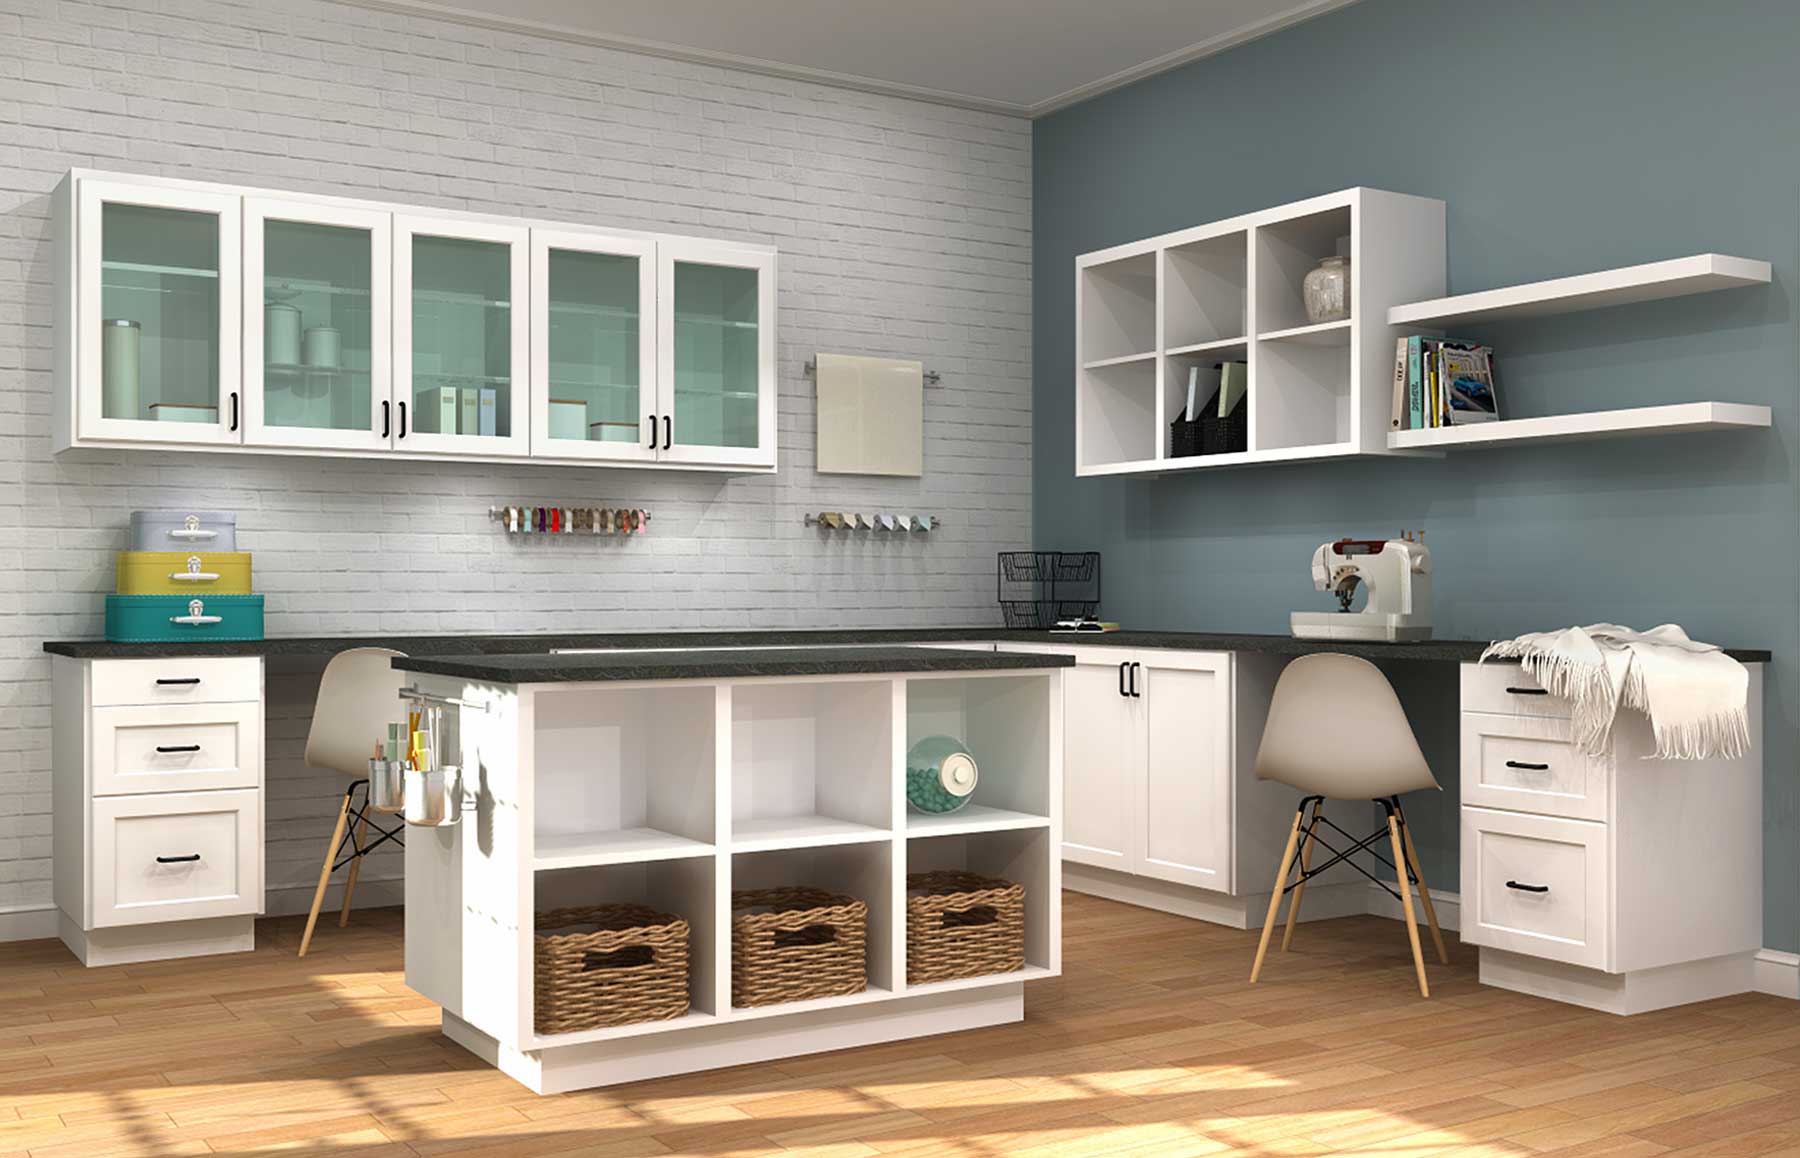 Cabinet Organization & Interiors - Kitchen Craft